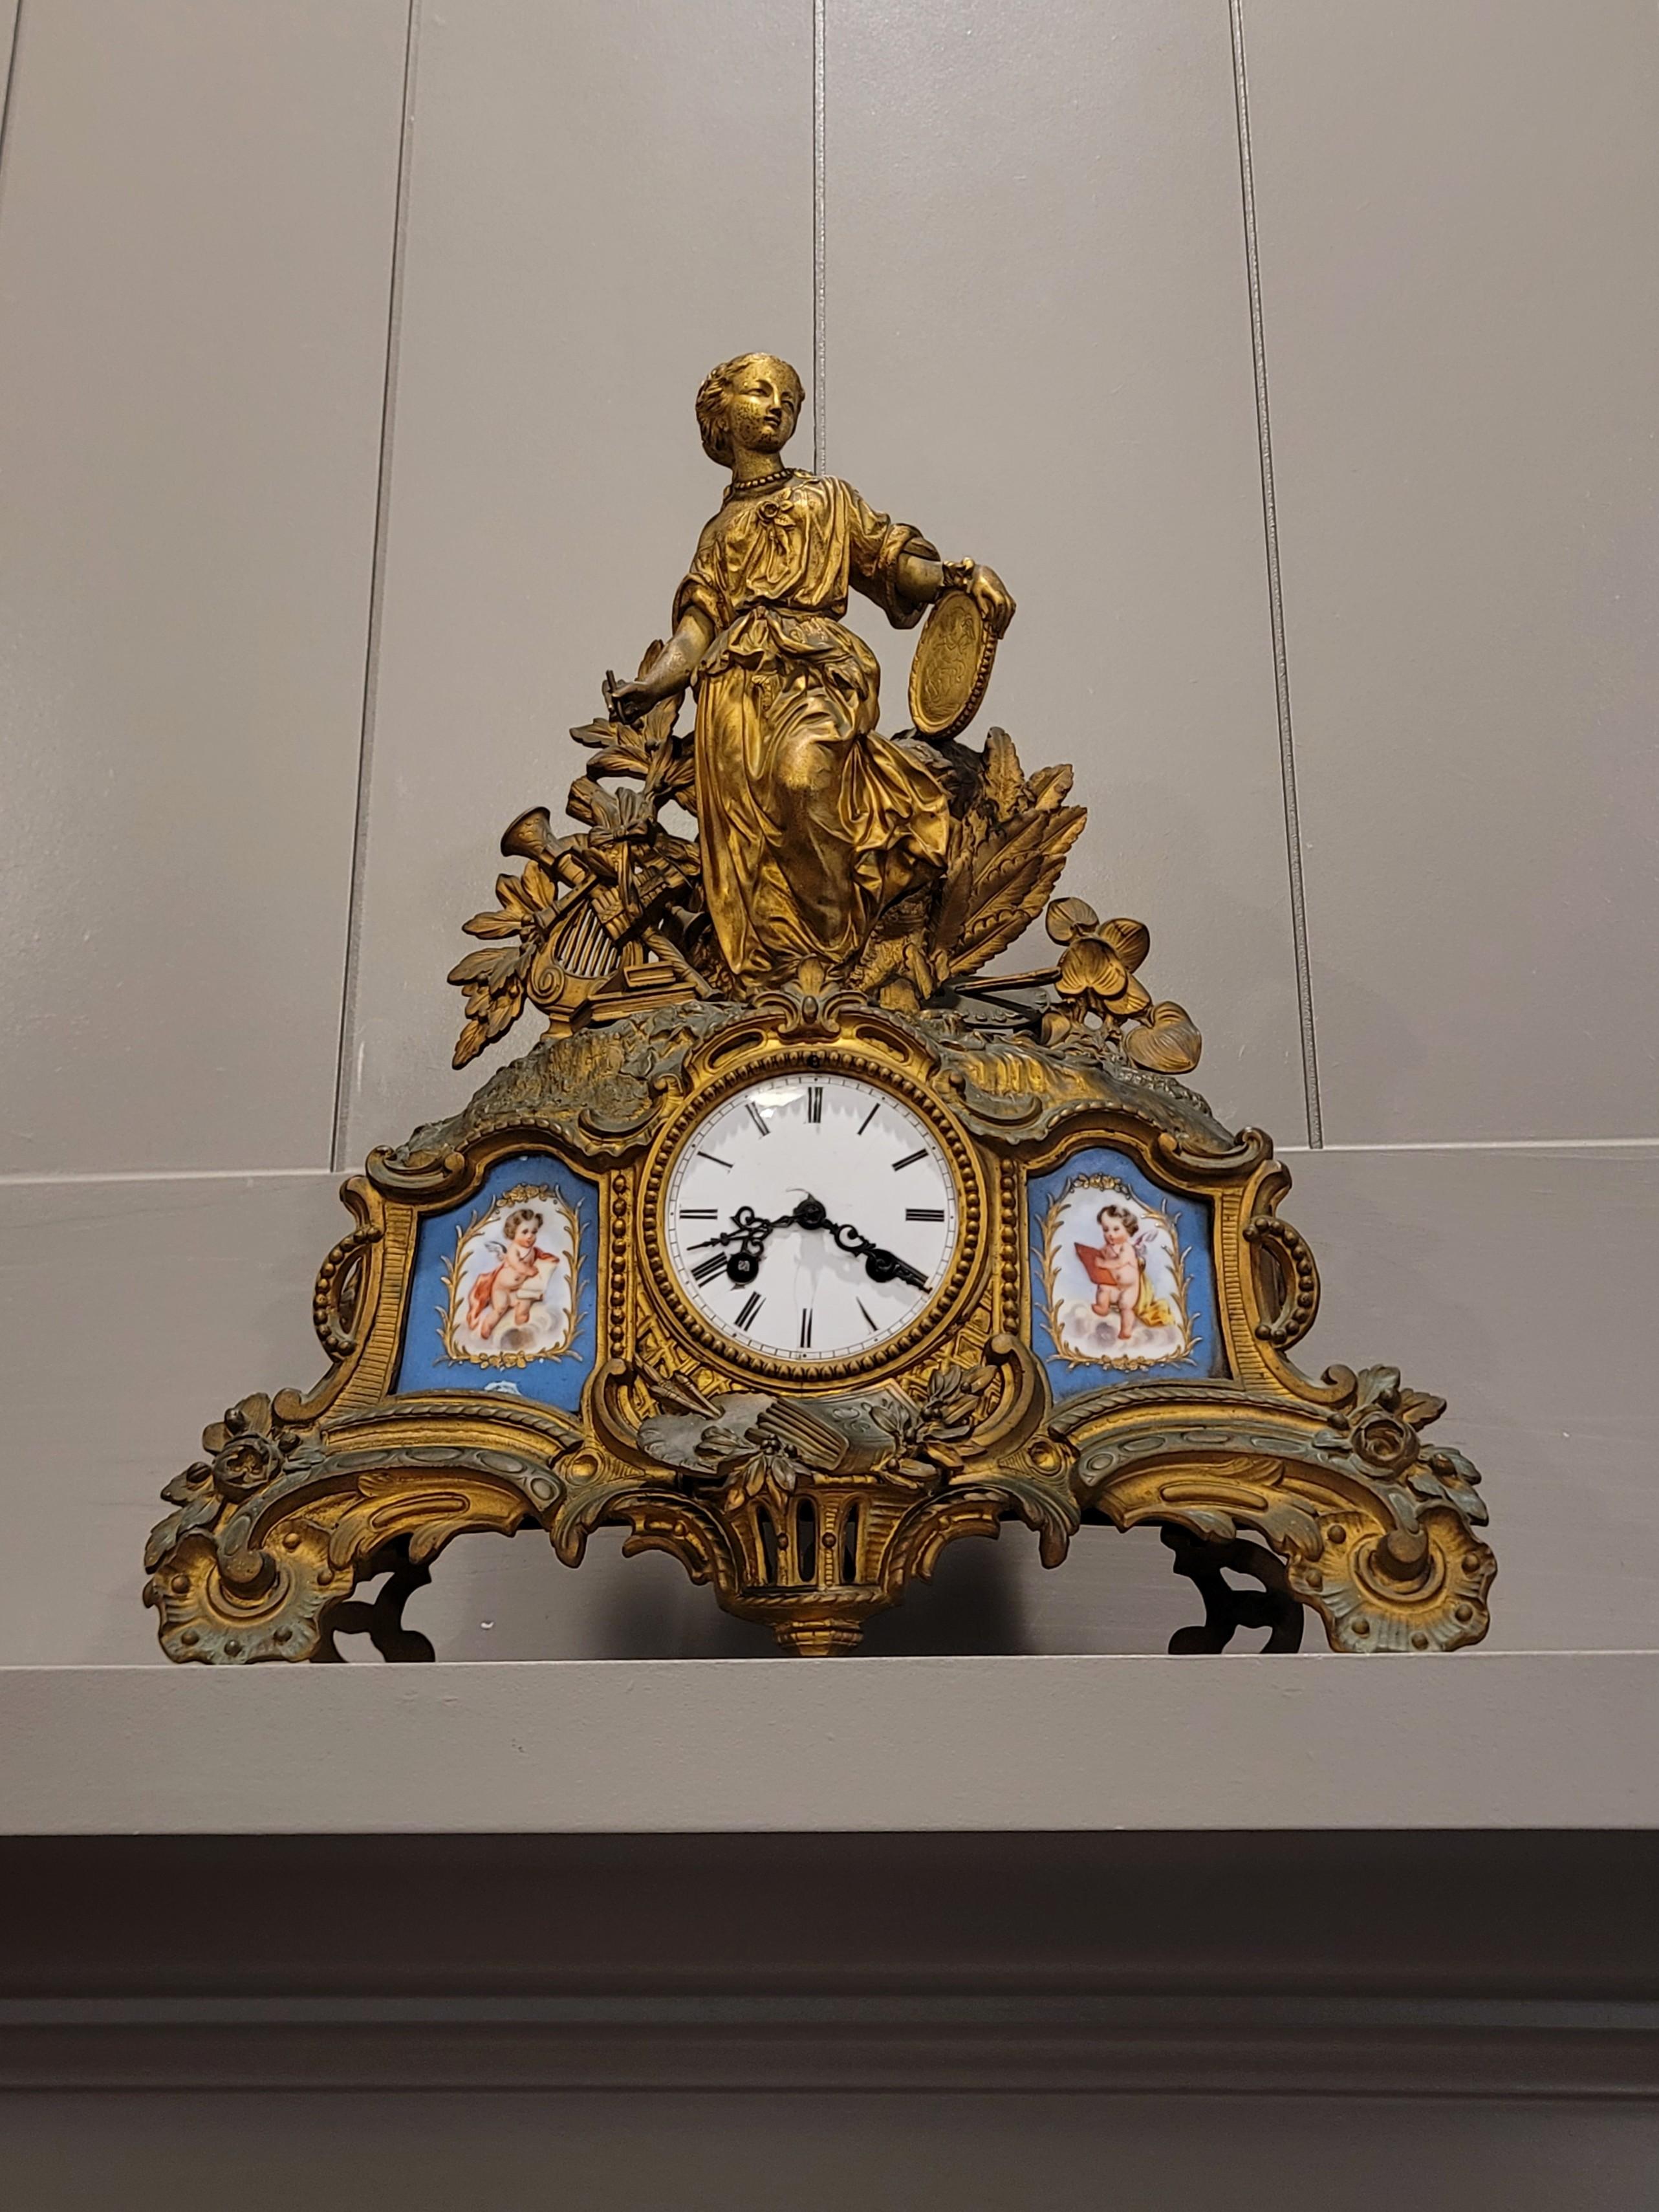 Une fabuleuse pendule de cheminée française ancienne, vers 1850, de style Sèvres en porcelaine montée sur métal doré par le sculpteur et marchand parisien Louis Japy (1829-1905), avec un mouvement à suspension en fil de soie estampillé Japy